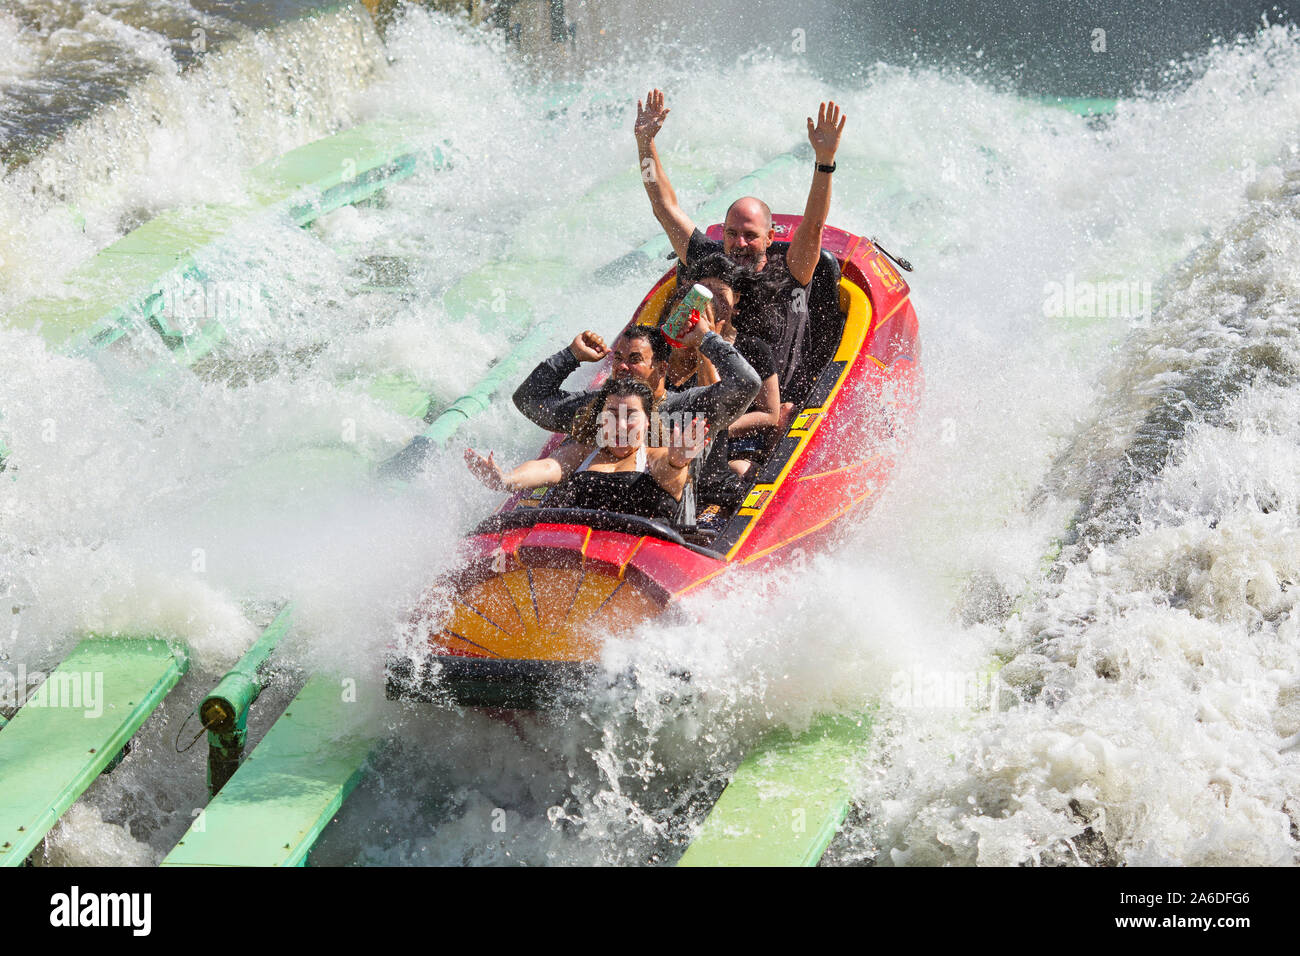 Dudley DoRight's Ripsaw Falls Water Ride, Isole di avventura, Universal Studios, Orlando, Florida Foto Stock